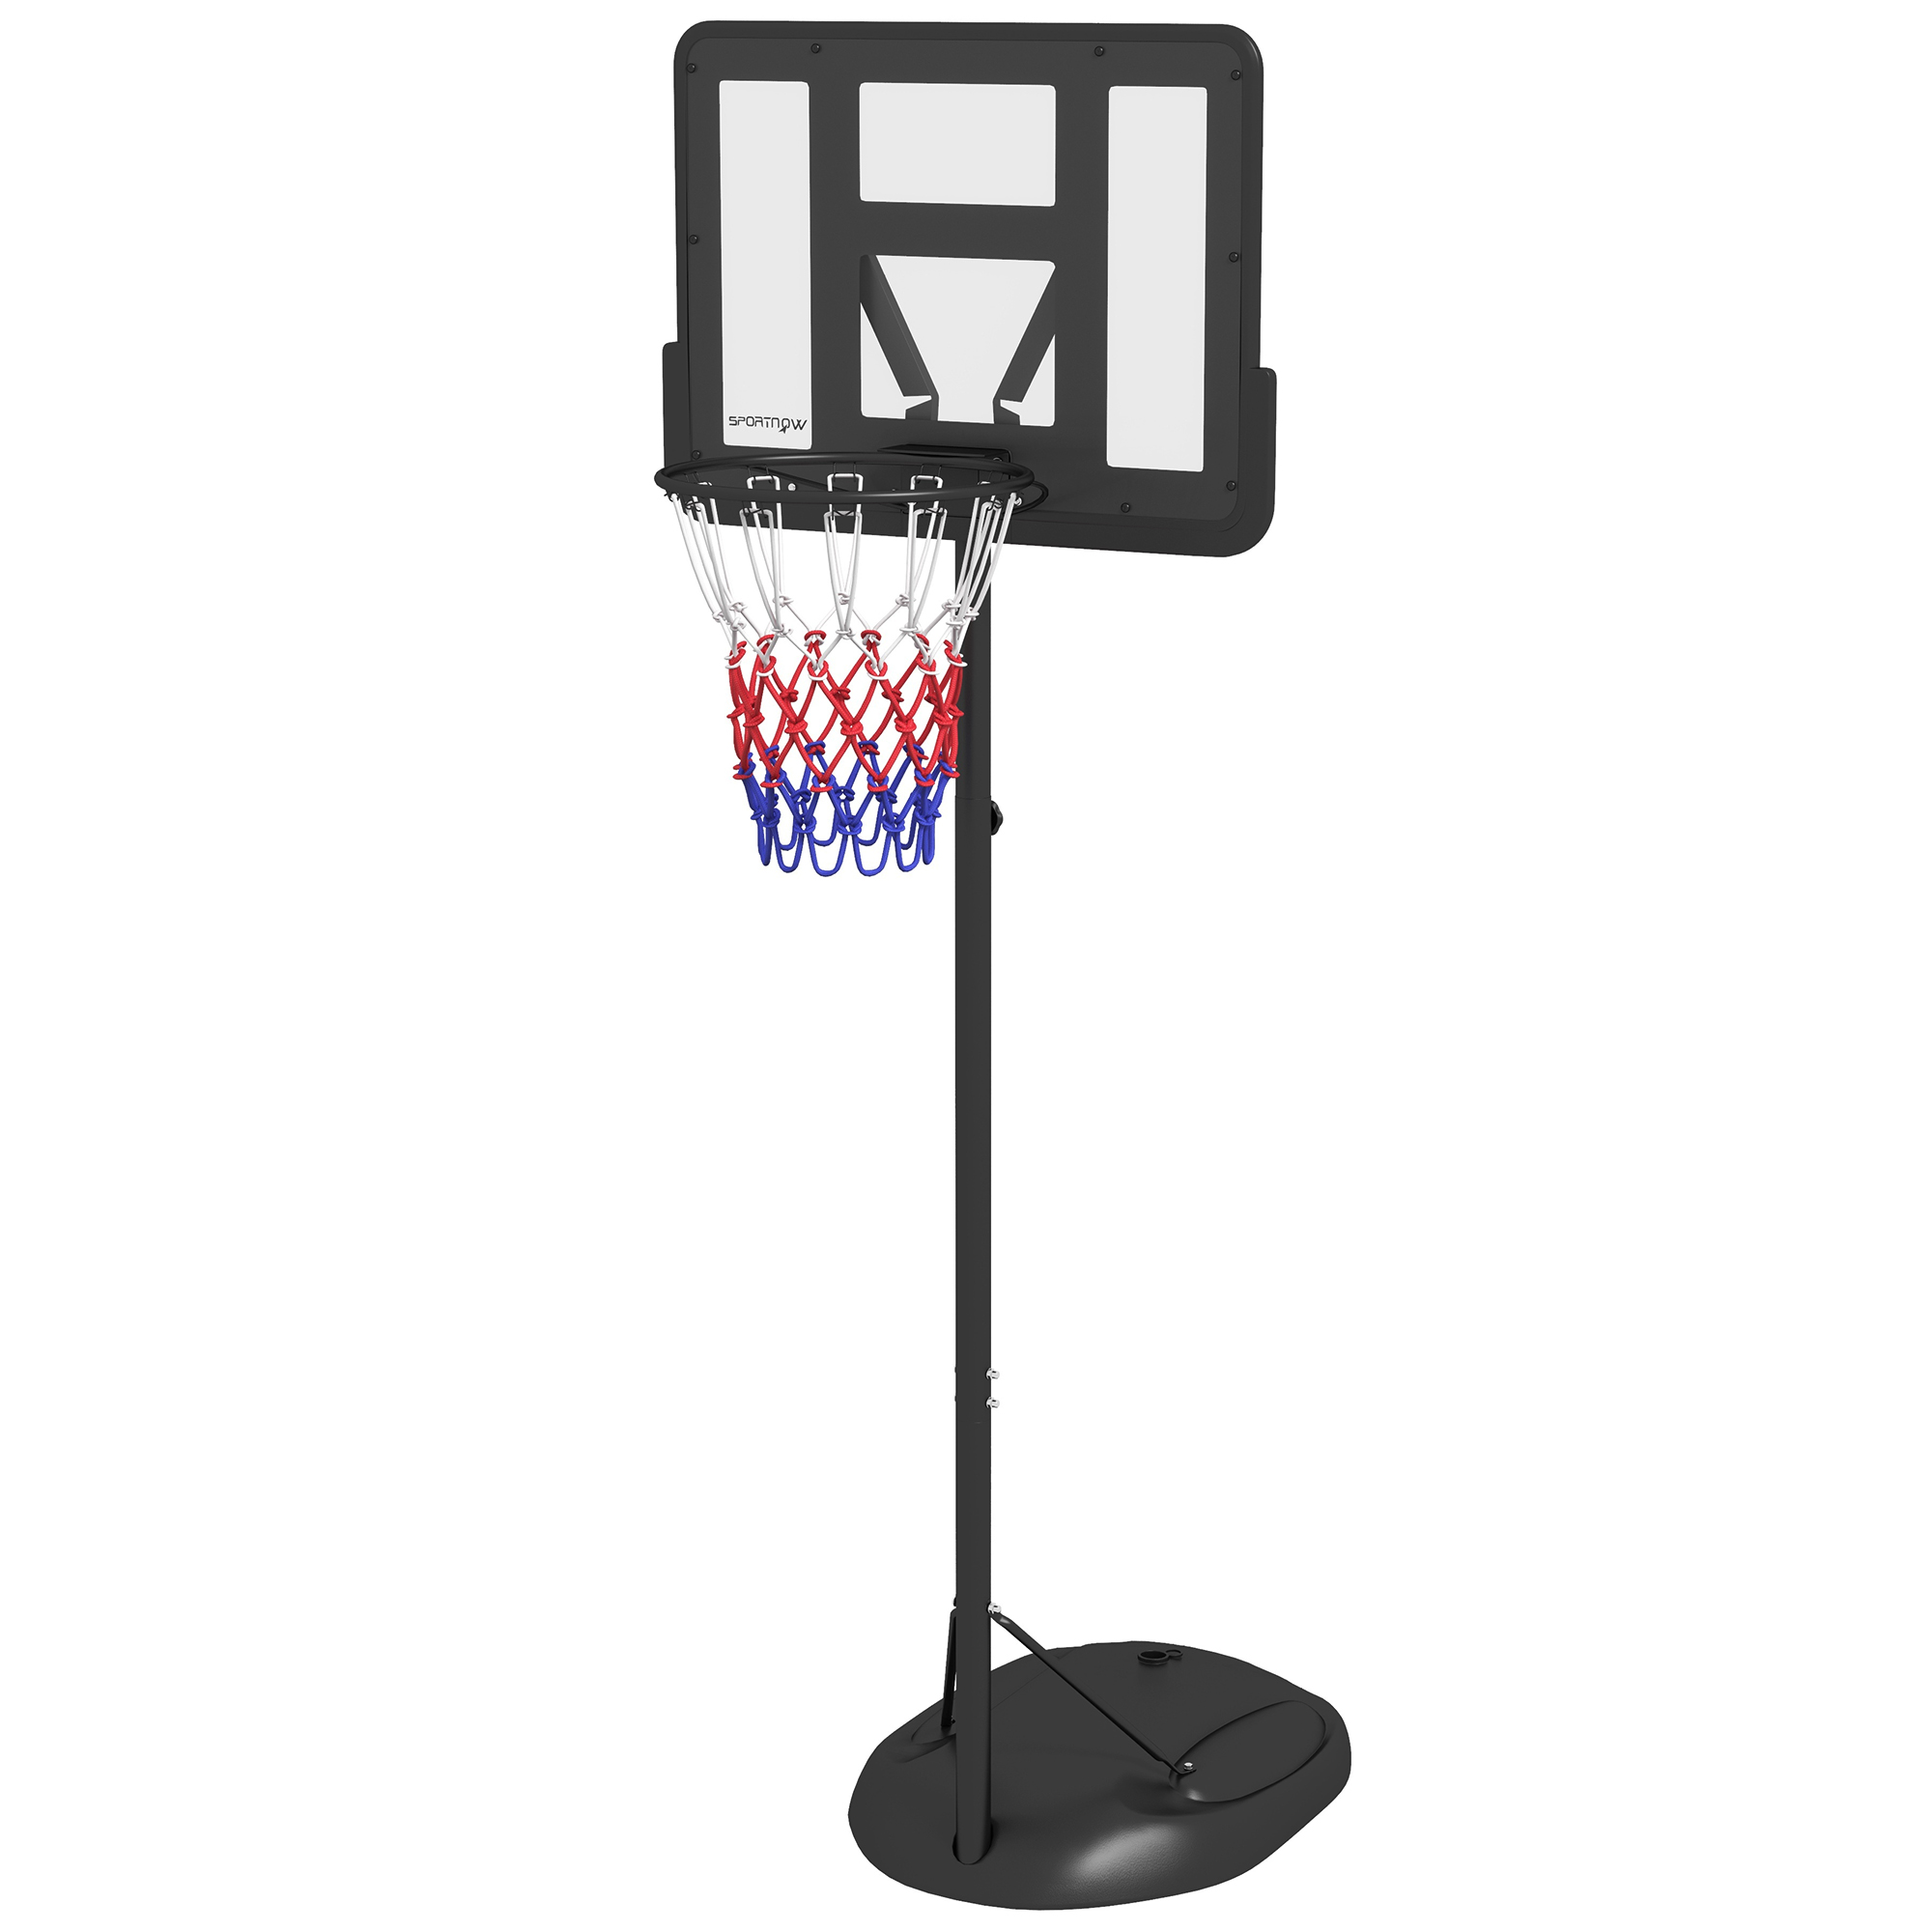 SPORTNOW Στεφάνη μπάσκετ ρυθμιζόμενου ύψους με γεμιστική βάση